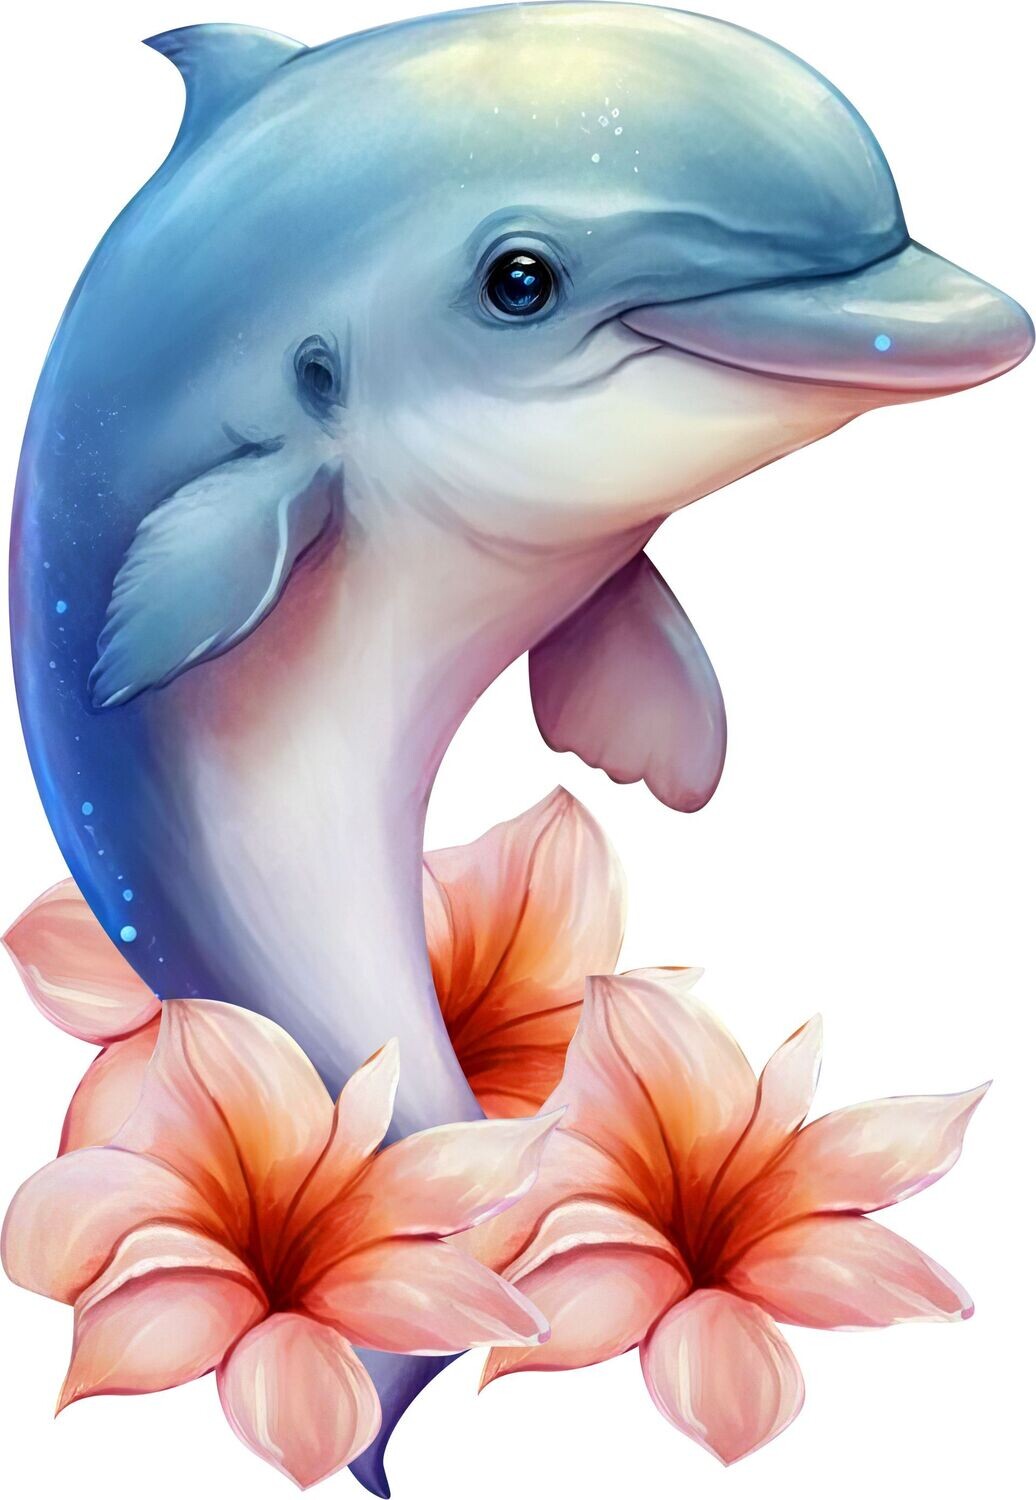 Bügelbild Delfin 2